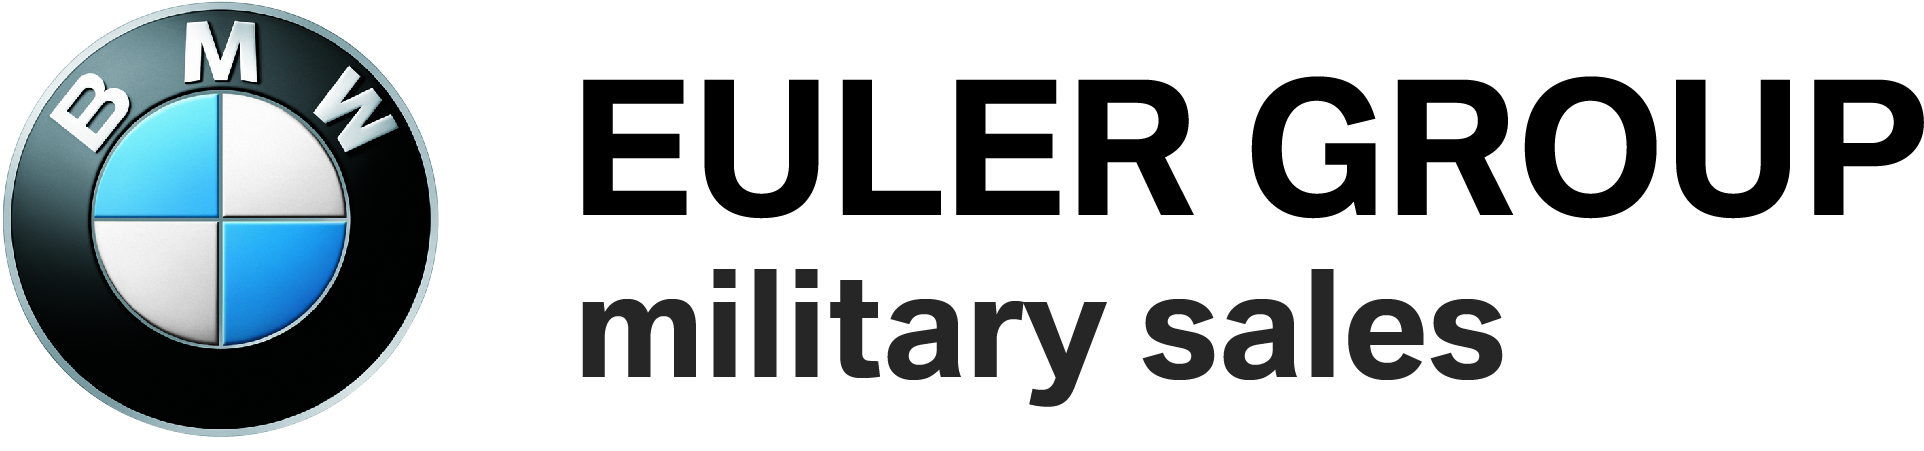 Logo BMW_EULER GROUP_militarysales.jpg